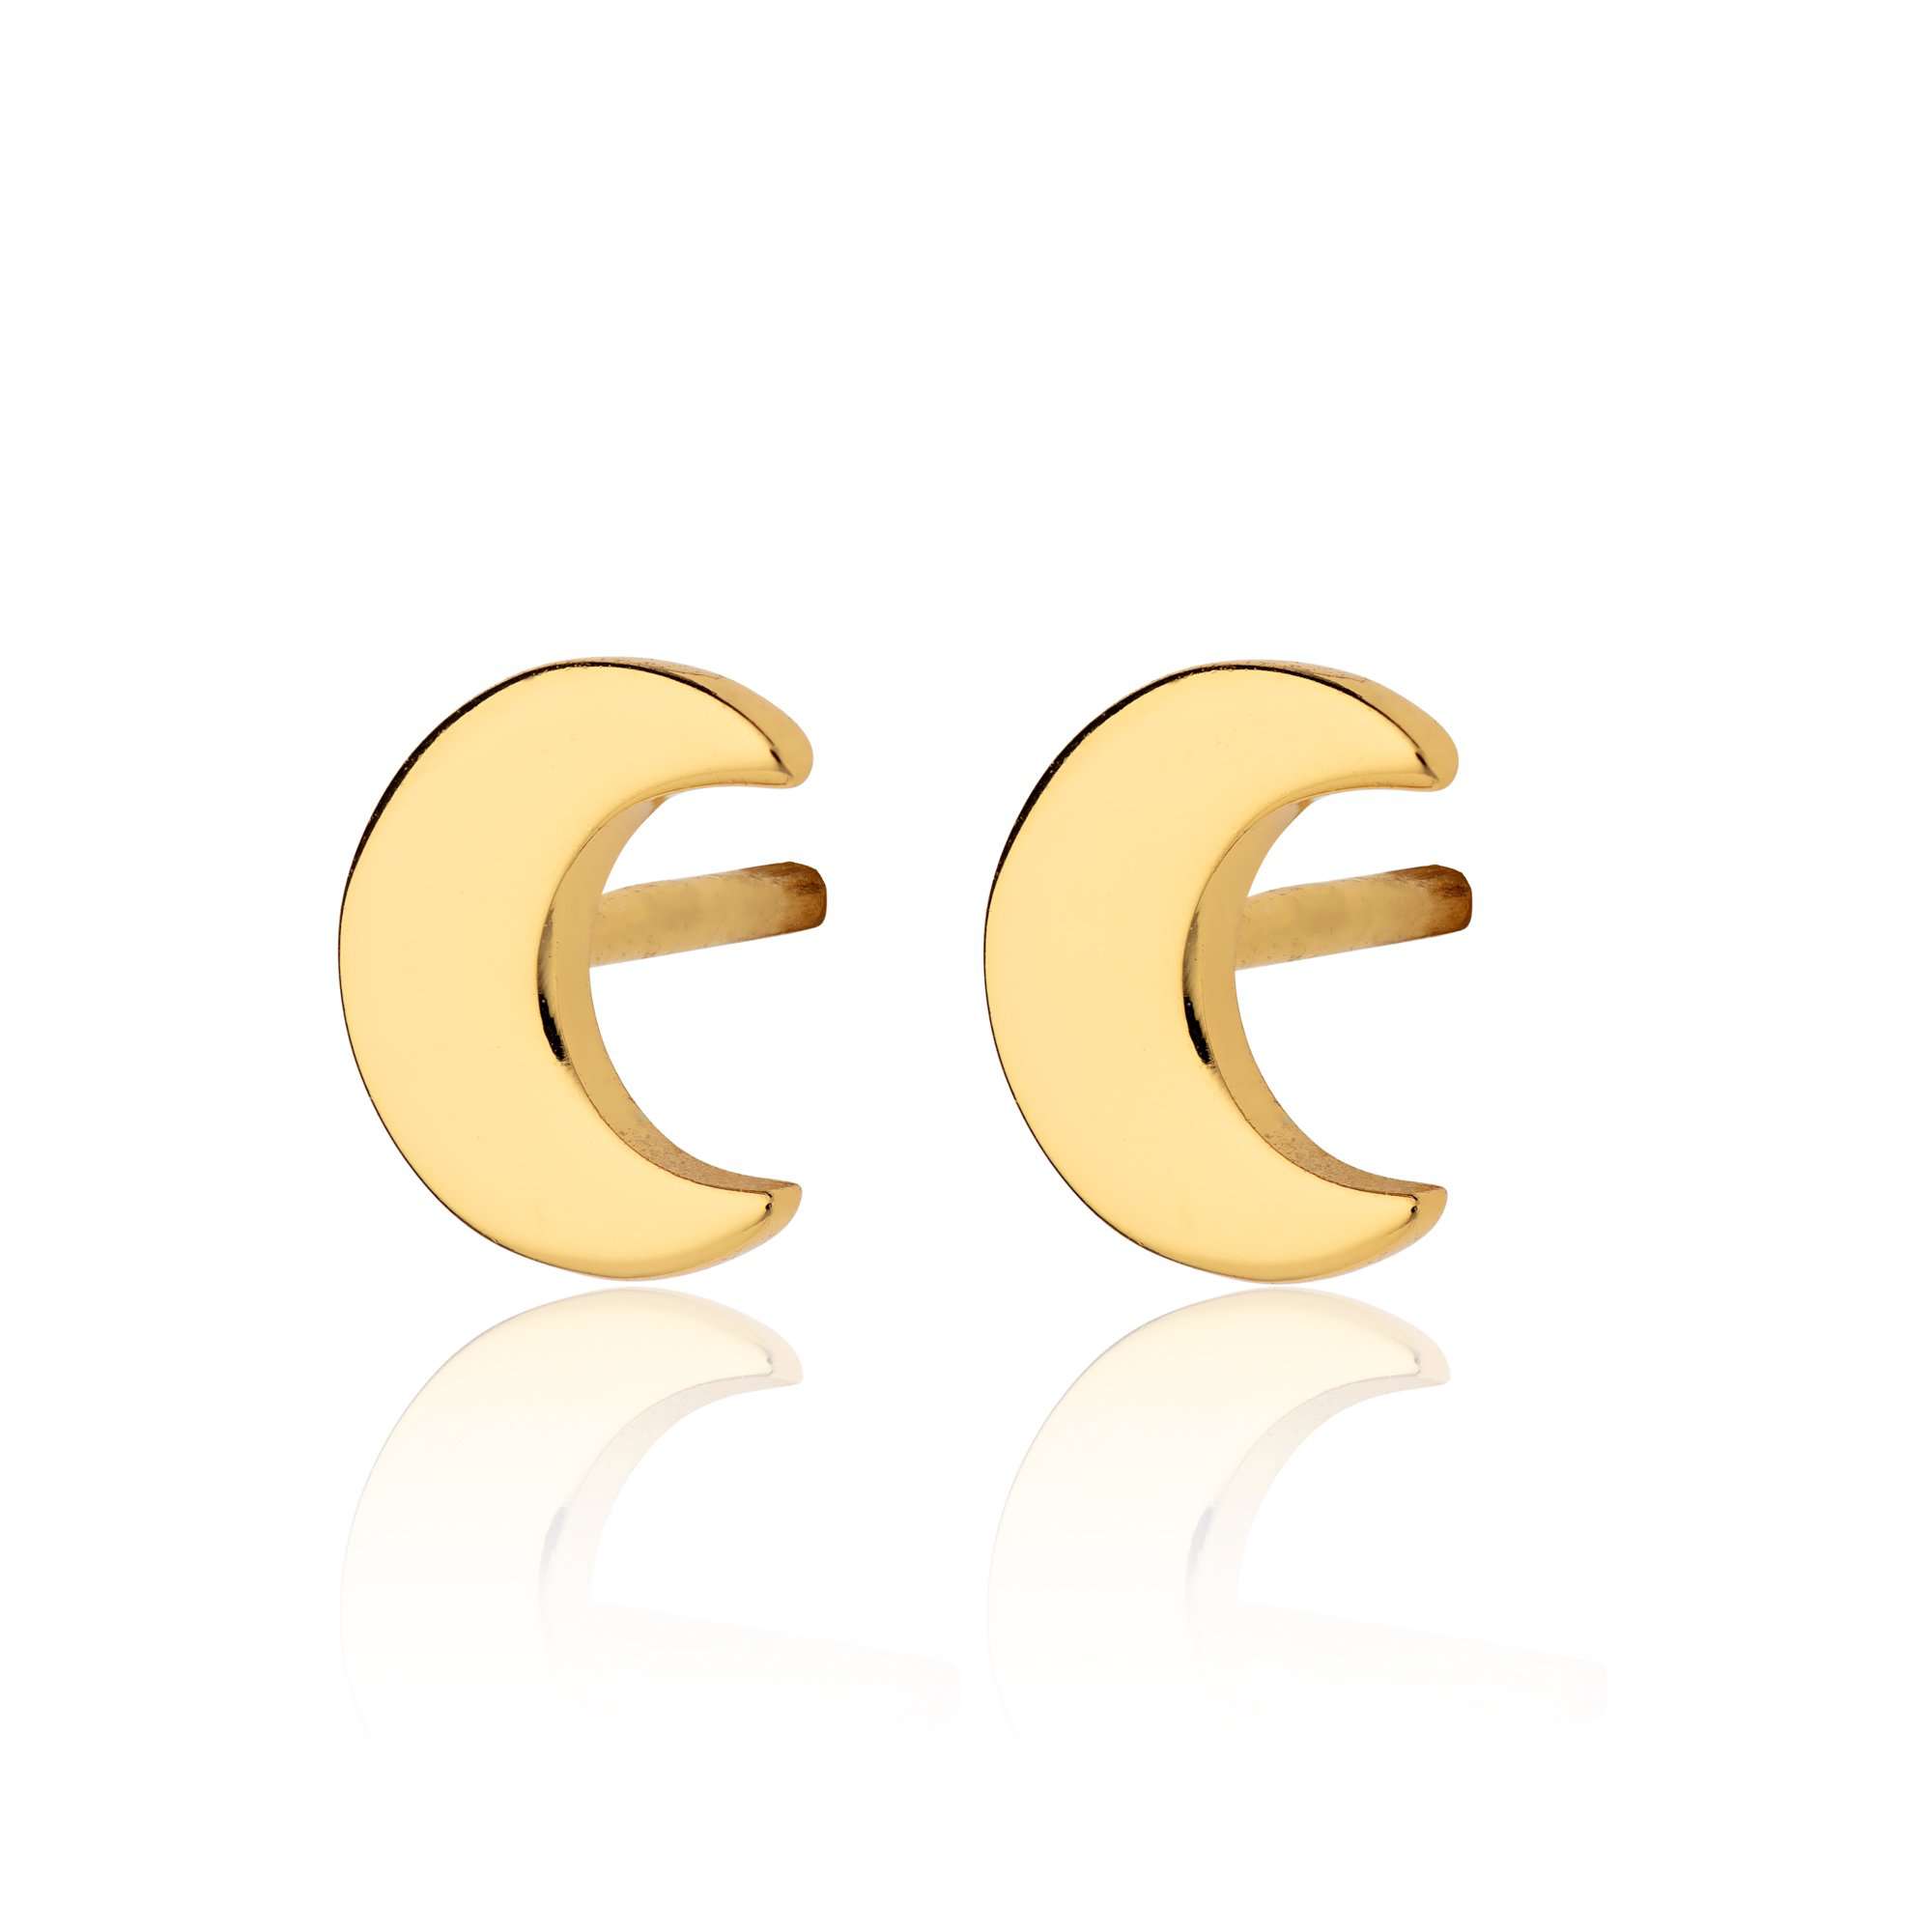  Crescent Moon Stud Earrings - by Scream Pretty